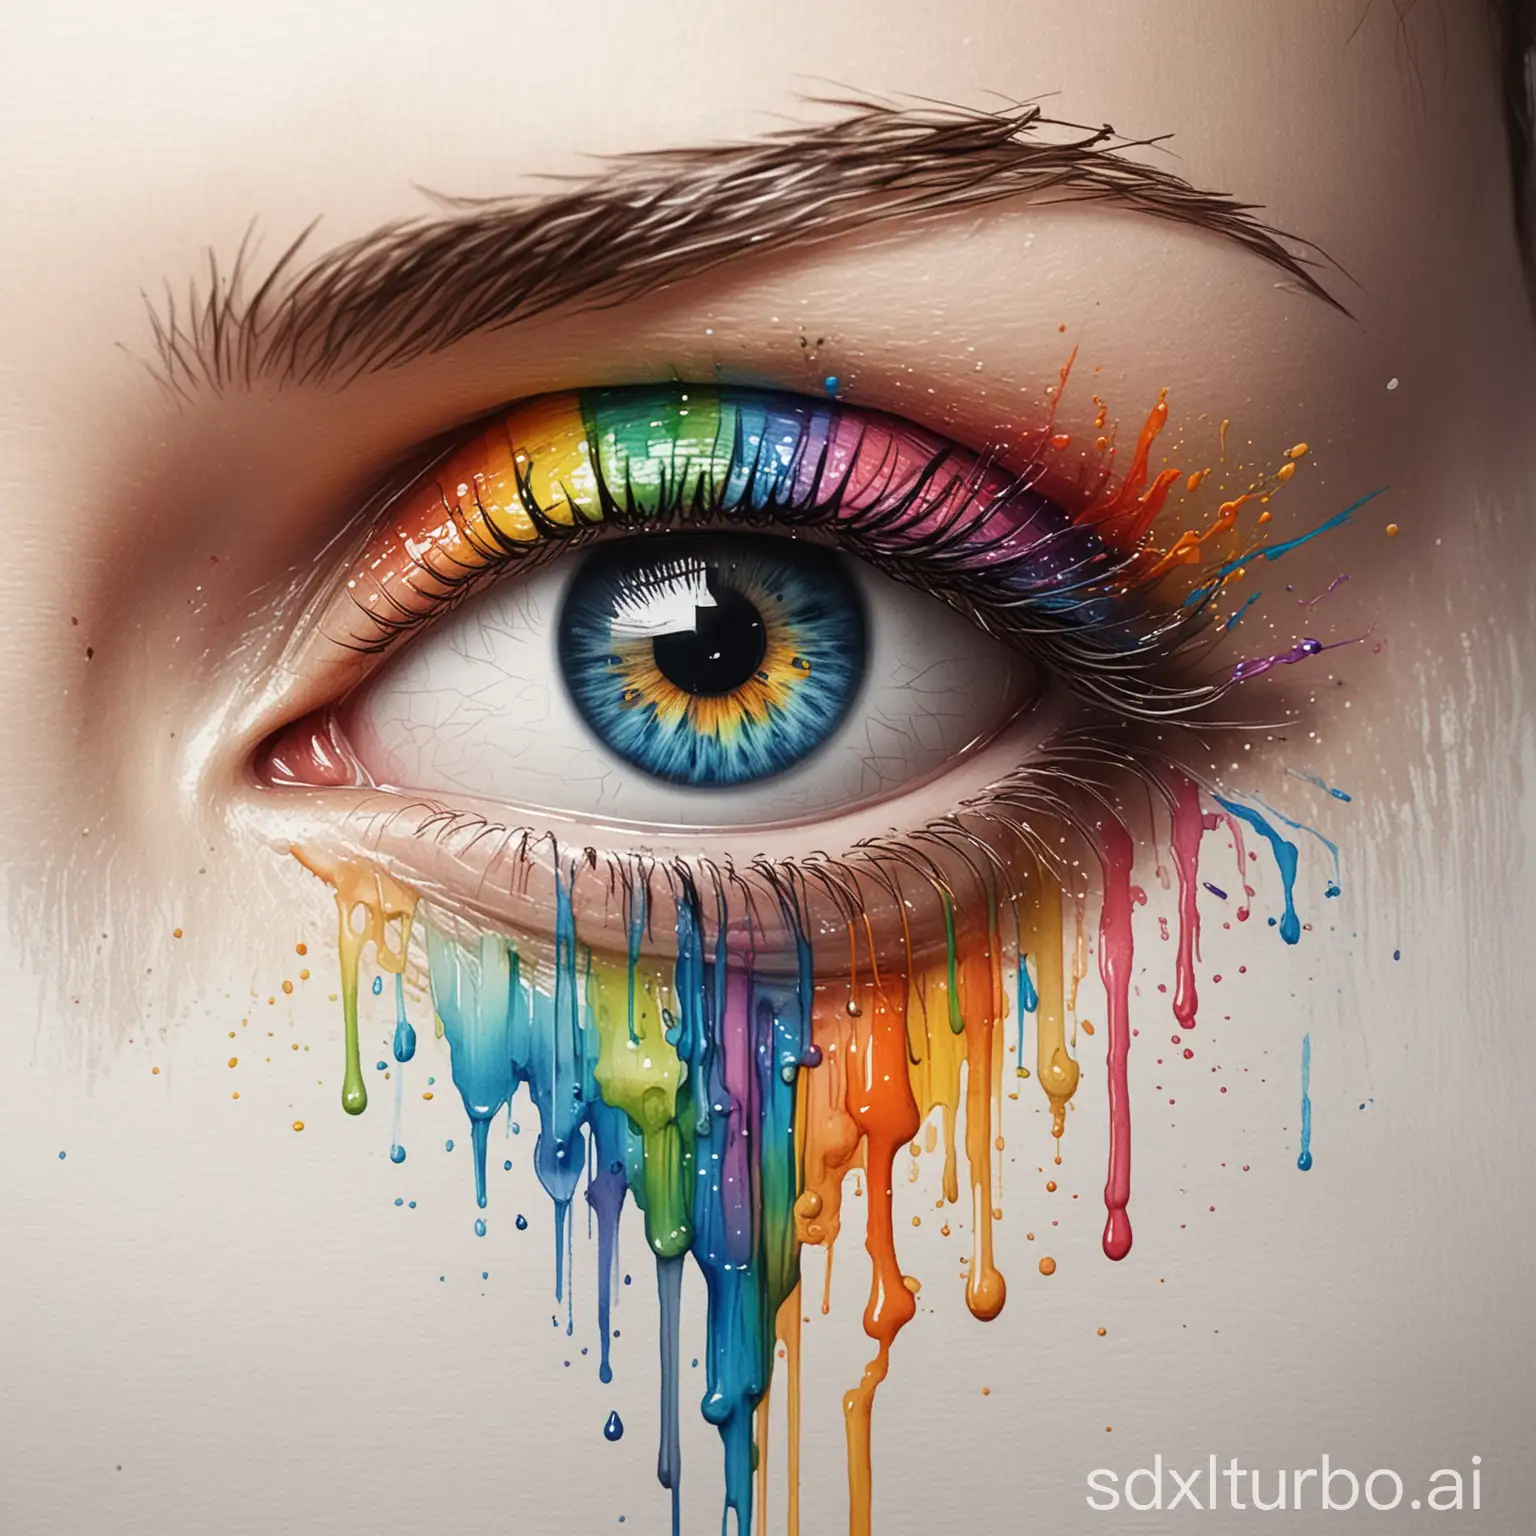 Surreal-Eye-Painting-Rainbow-Watercolor-Sketch